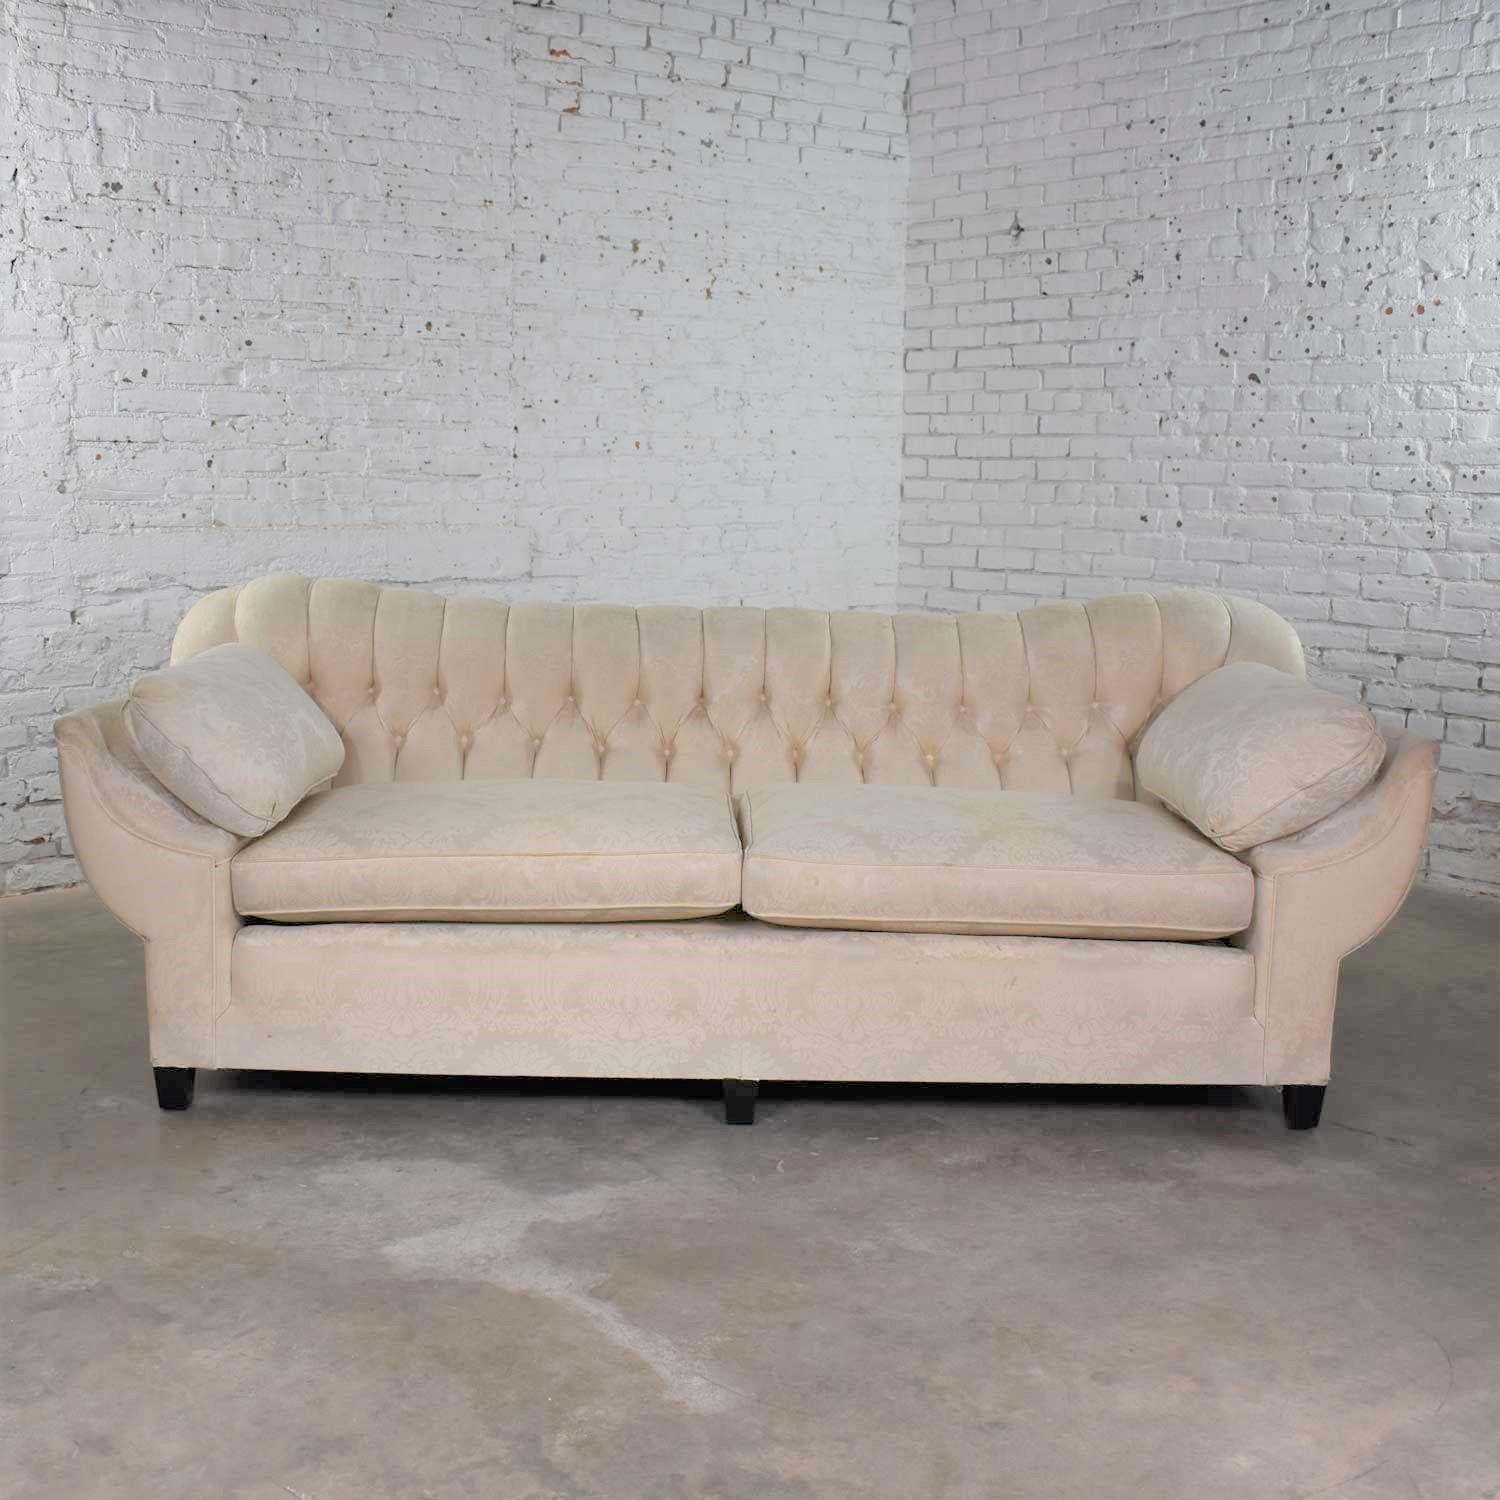 Fabelhaftes Vintage-Sofa im Art-Déco- oder Hollywood-Regency-Stil mit getufteter Rückenlehne und konkav gepolsterten Armlehnen. Das Sofa ist in einem soliden, wunderbaren Zustand, aber sein ursprünglicher weißer Damaststoff muss ersetzt werden,